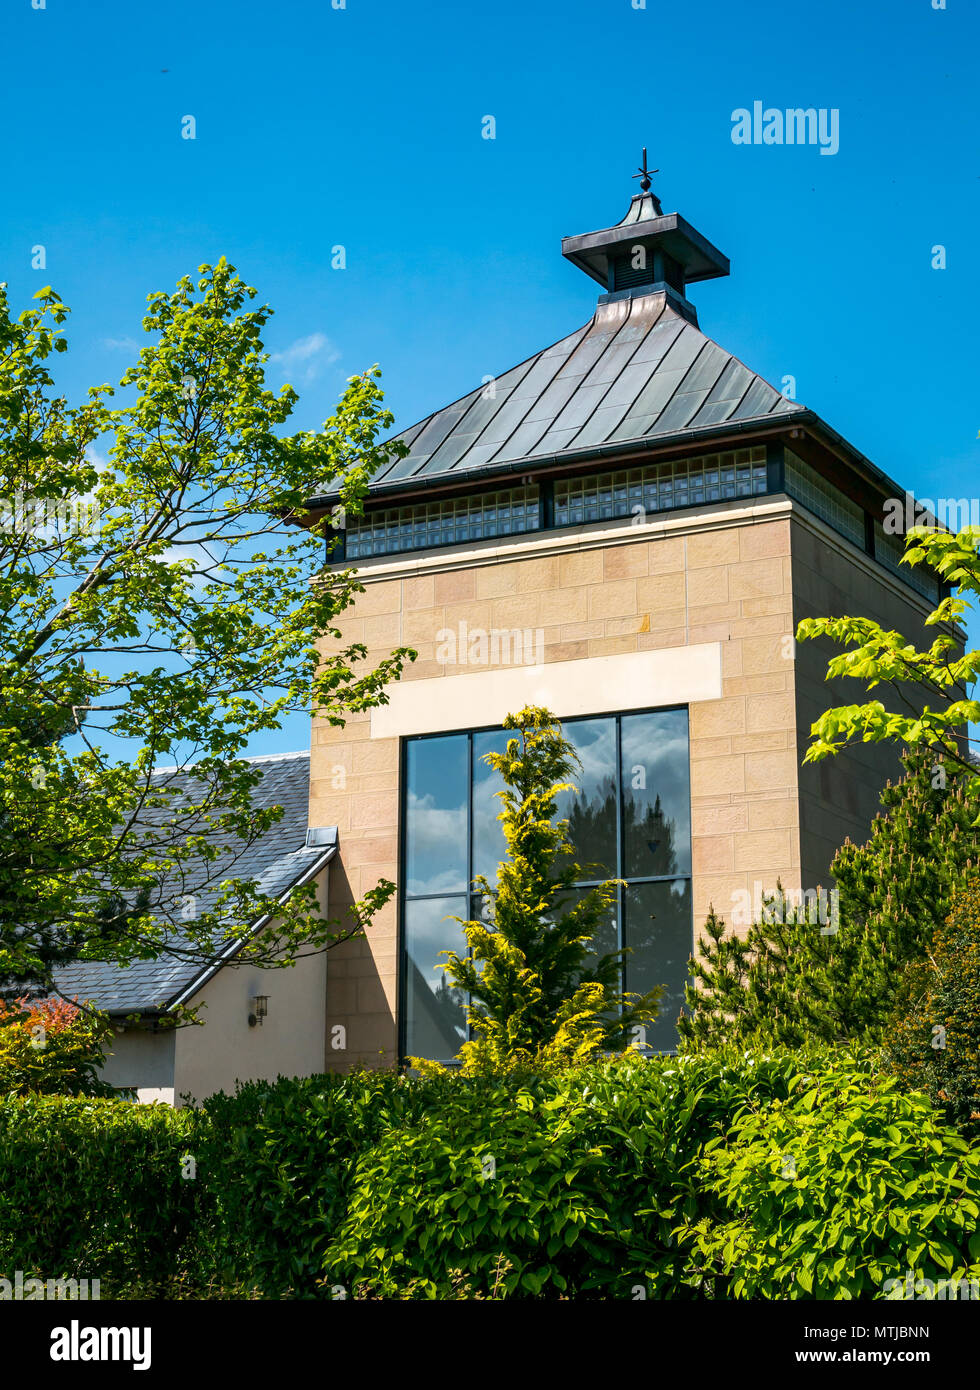 Scotch Whisky Research Institute avec tour en forme d'oast house, de l'Université Heriot-Watt, Edimbourg, Ecosse, Royaume-Uni Banque D'Images